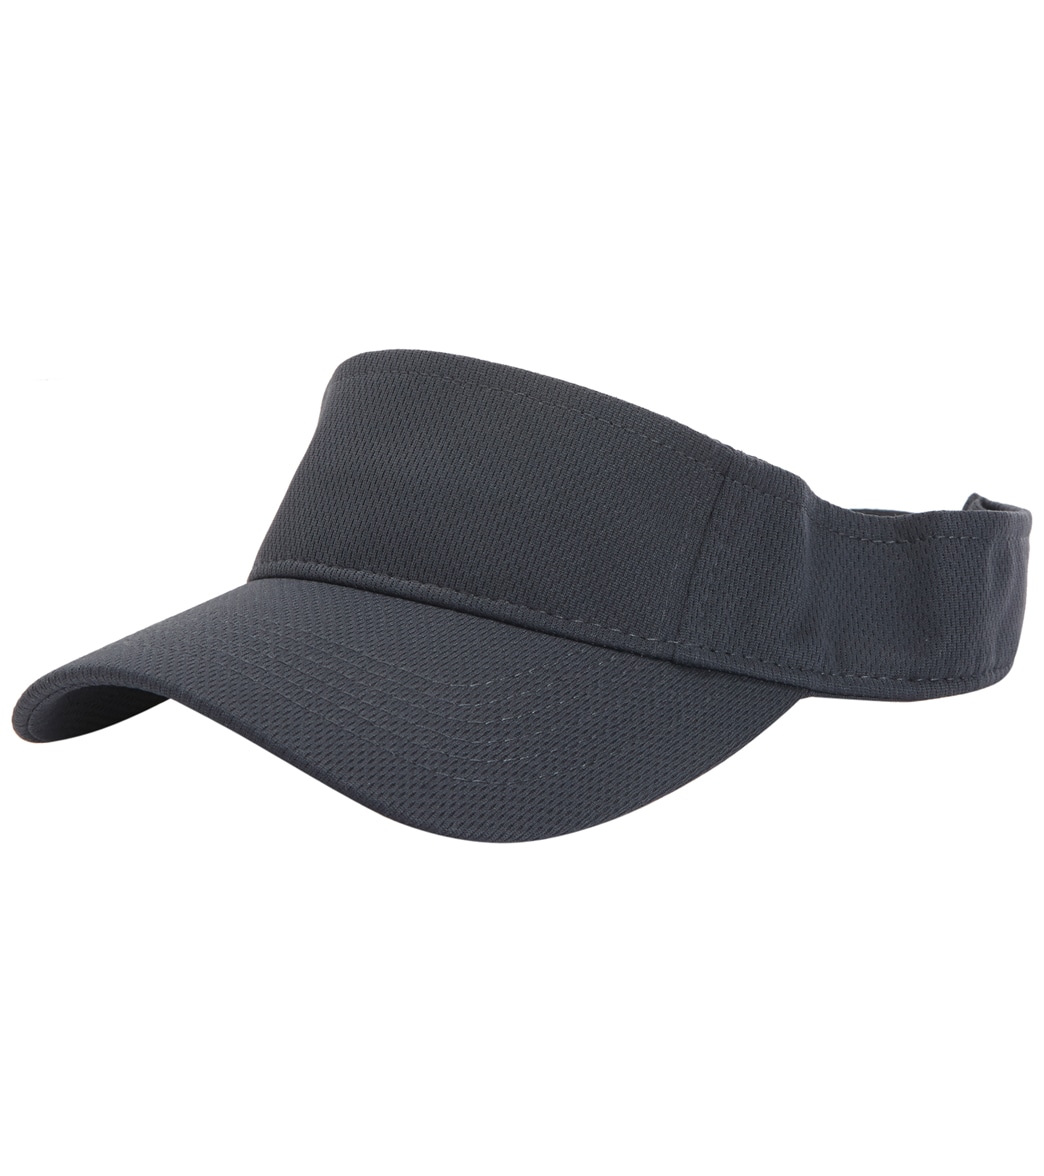 Men's sport-tek posicharge racermesh visor - graphite polyester - SwimOutlet.com